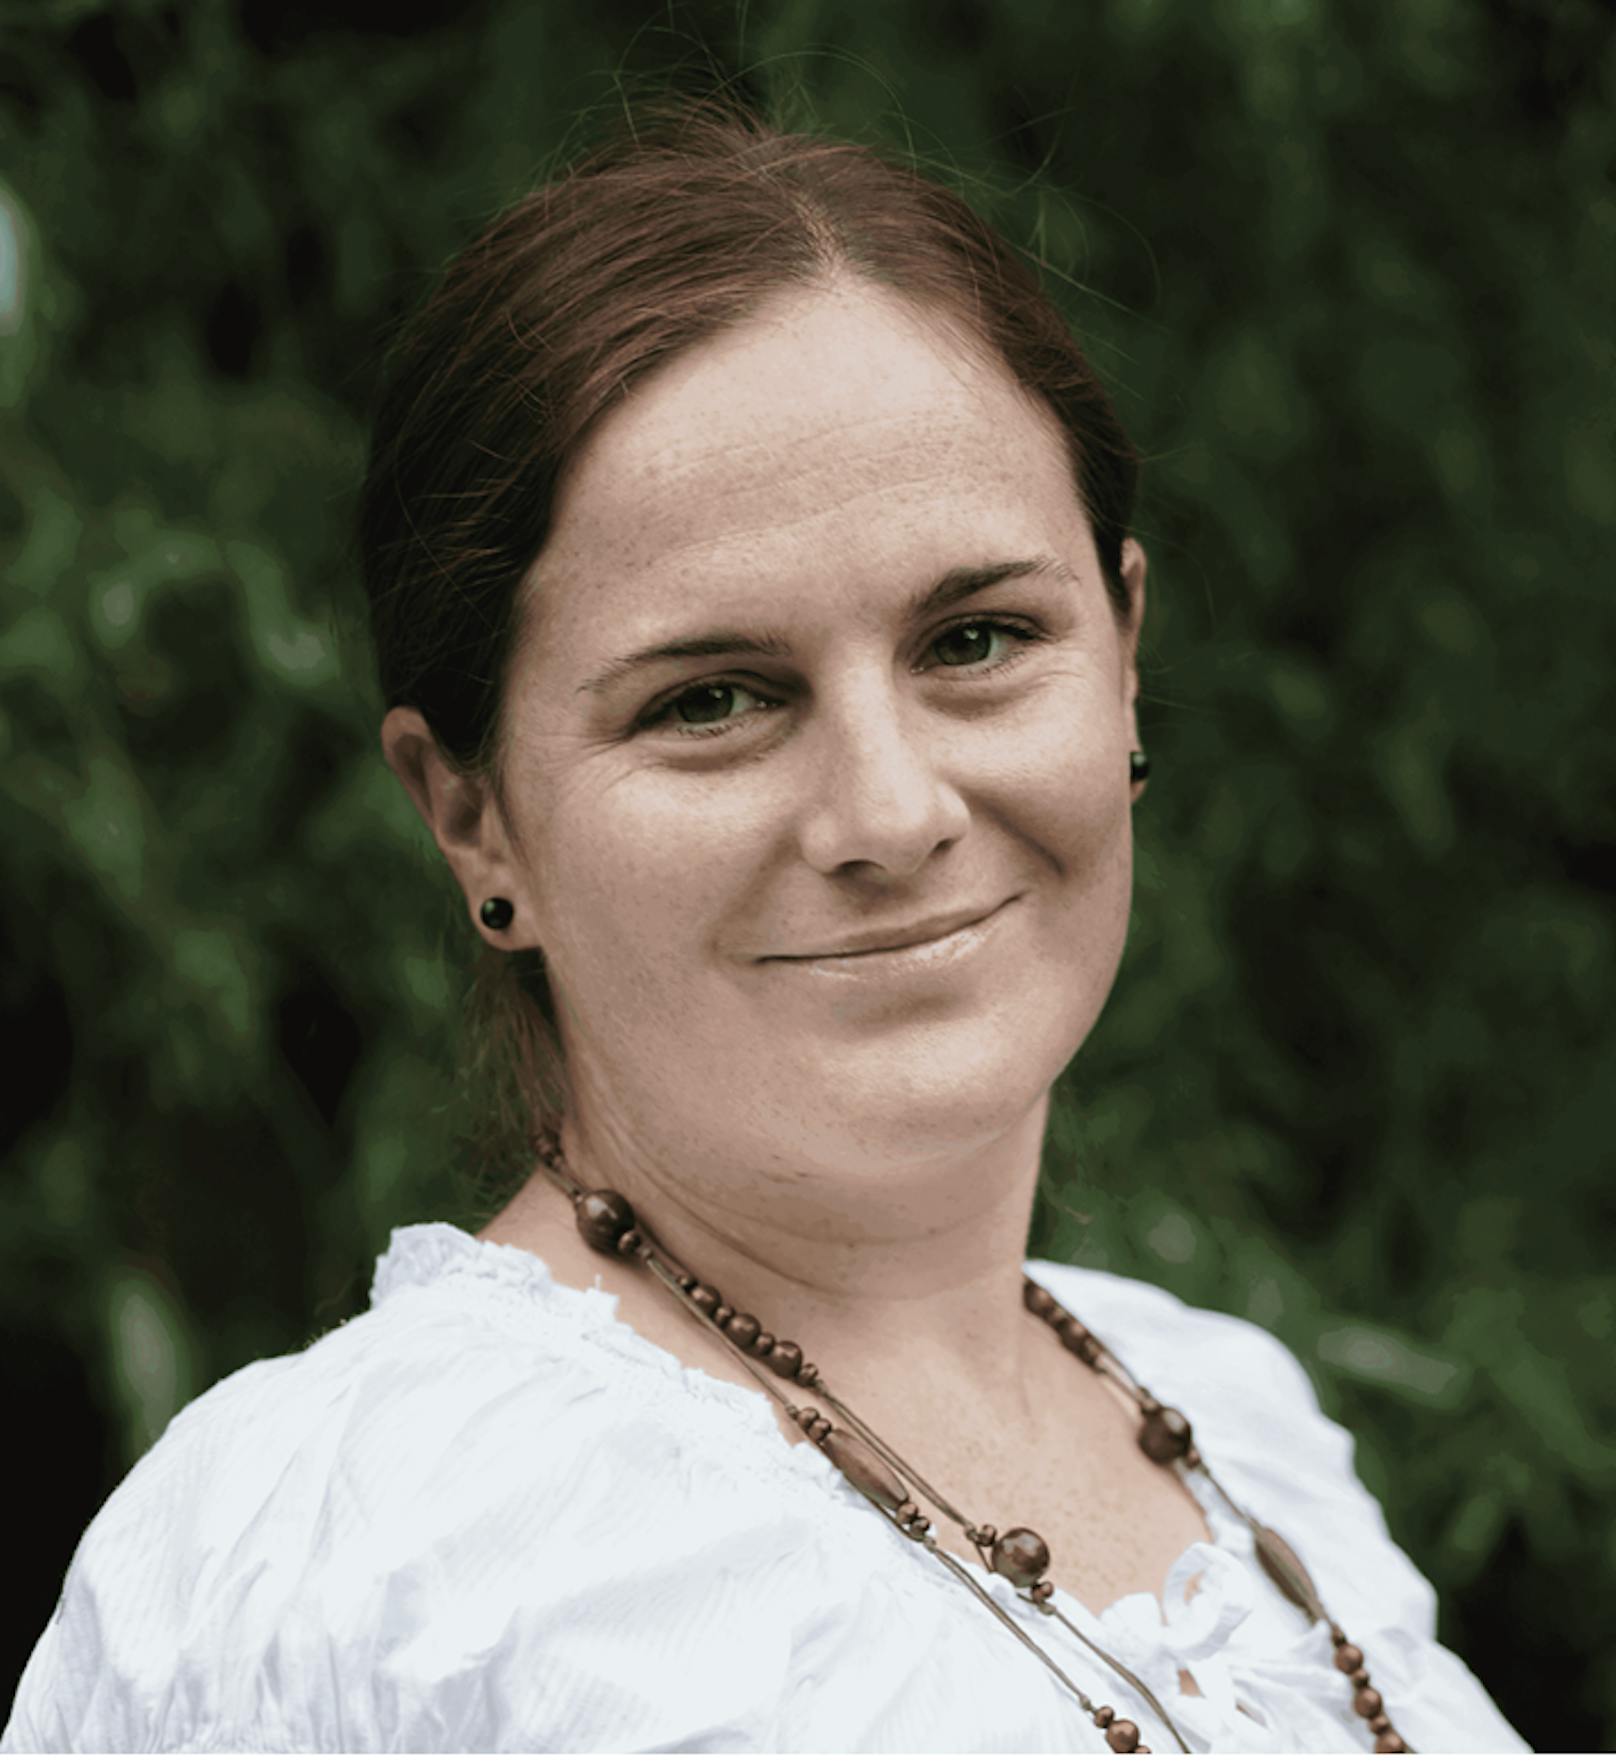 Gynäkologin Dr. Katrin Baumgarten vom <a href="https://www.sante-femme.at/" target="_blank">Santé femme</a> Institut für Frauengesundheit